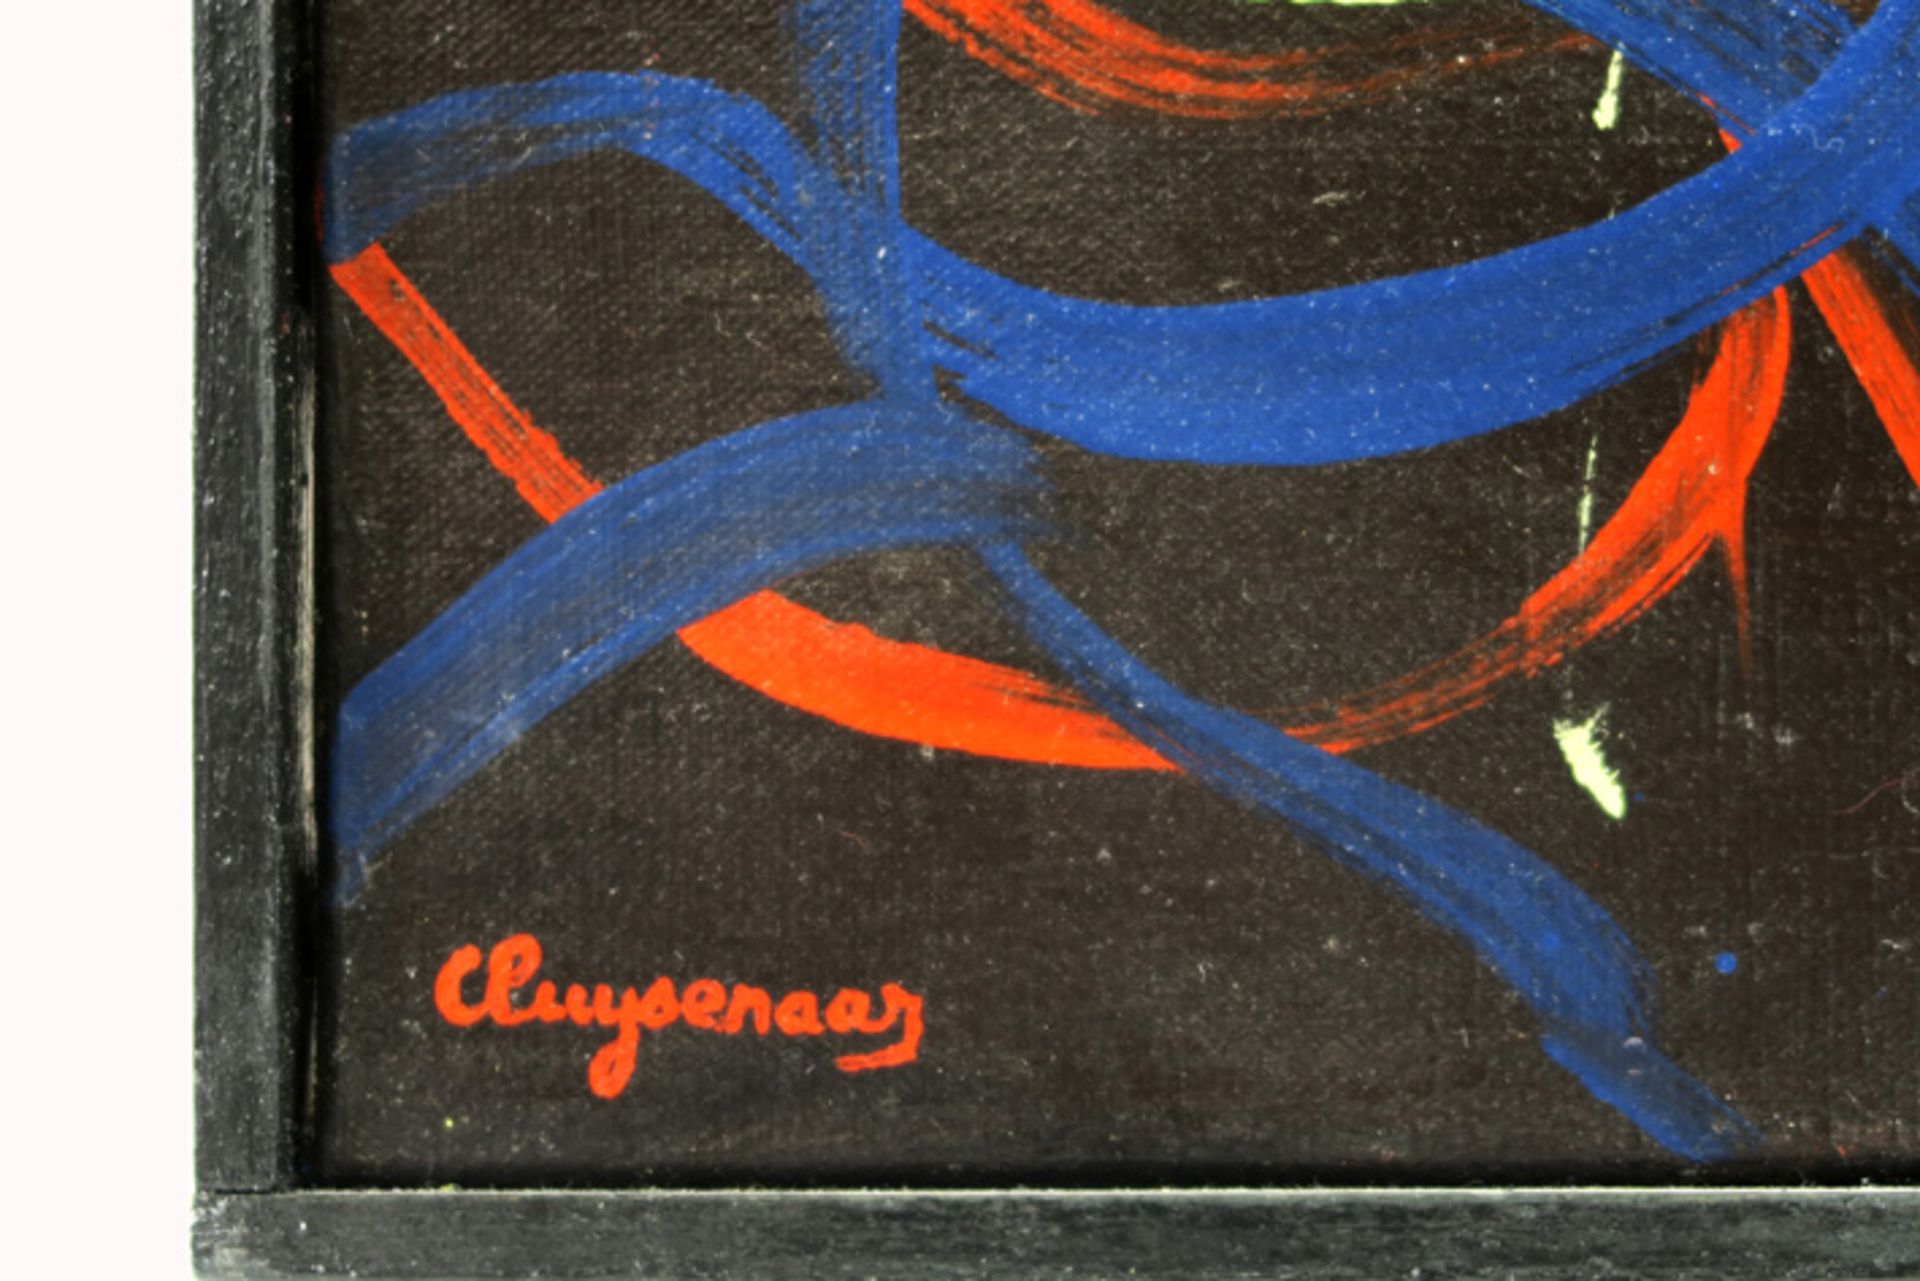 20th Cent CLUYSENAAR JOHN (1899 - 1986) olieverfschilderij op doek : "Abstracte compositie" - 60 x - Image 3 of 5